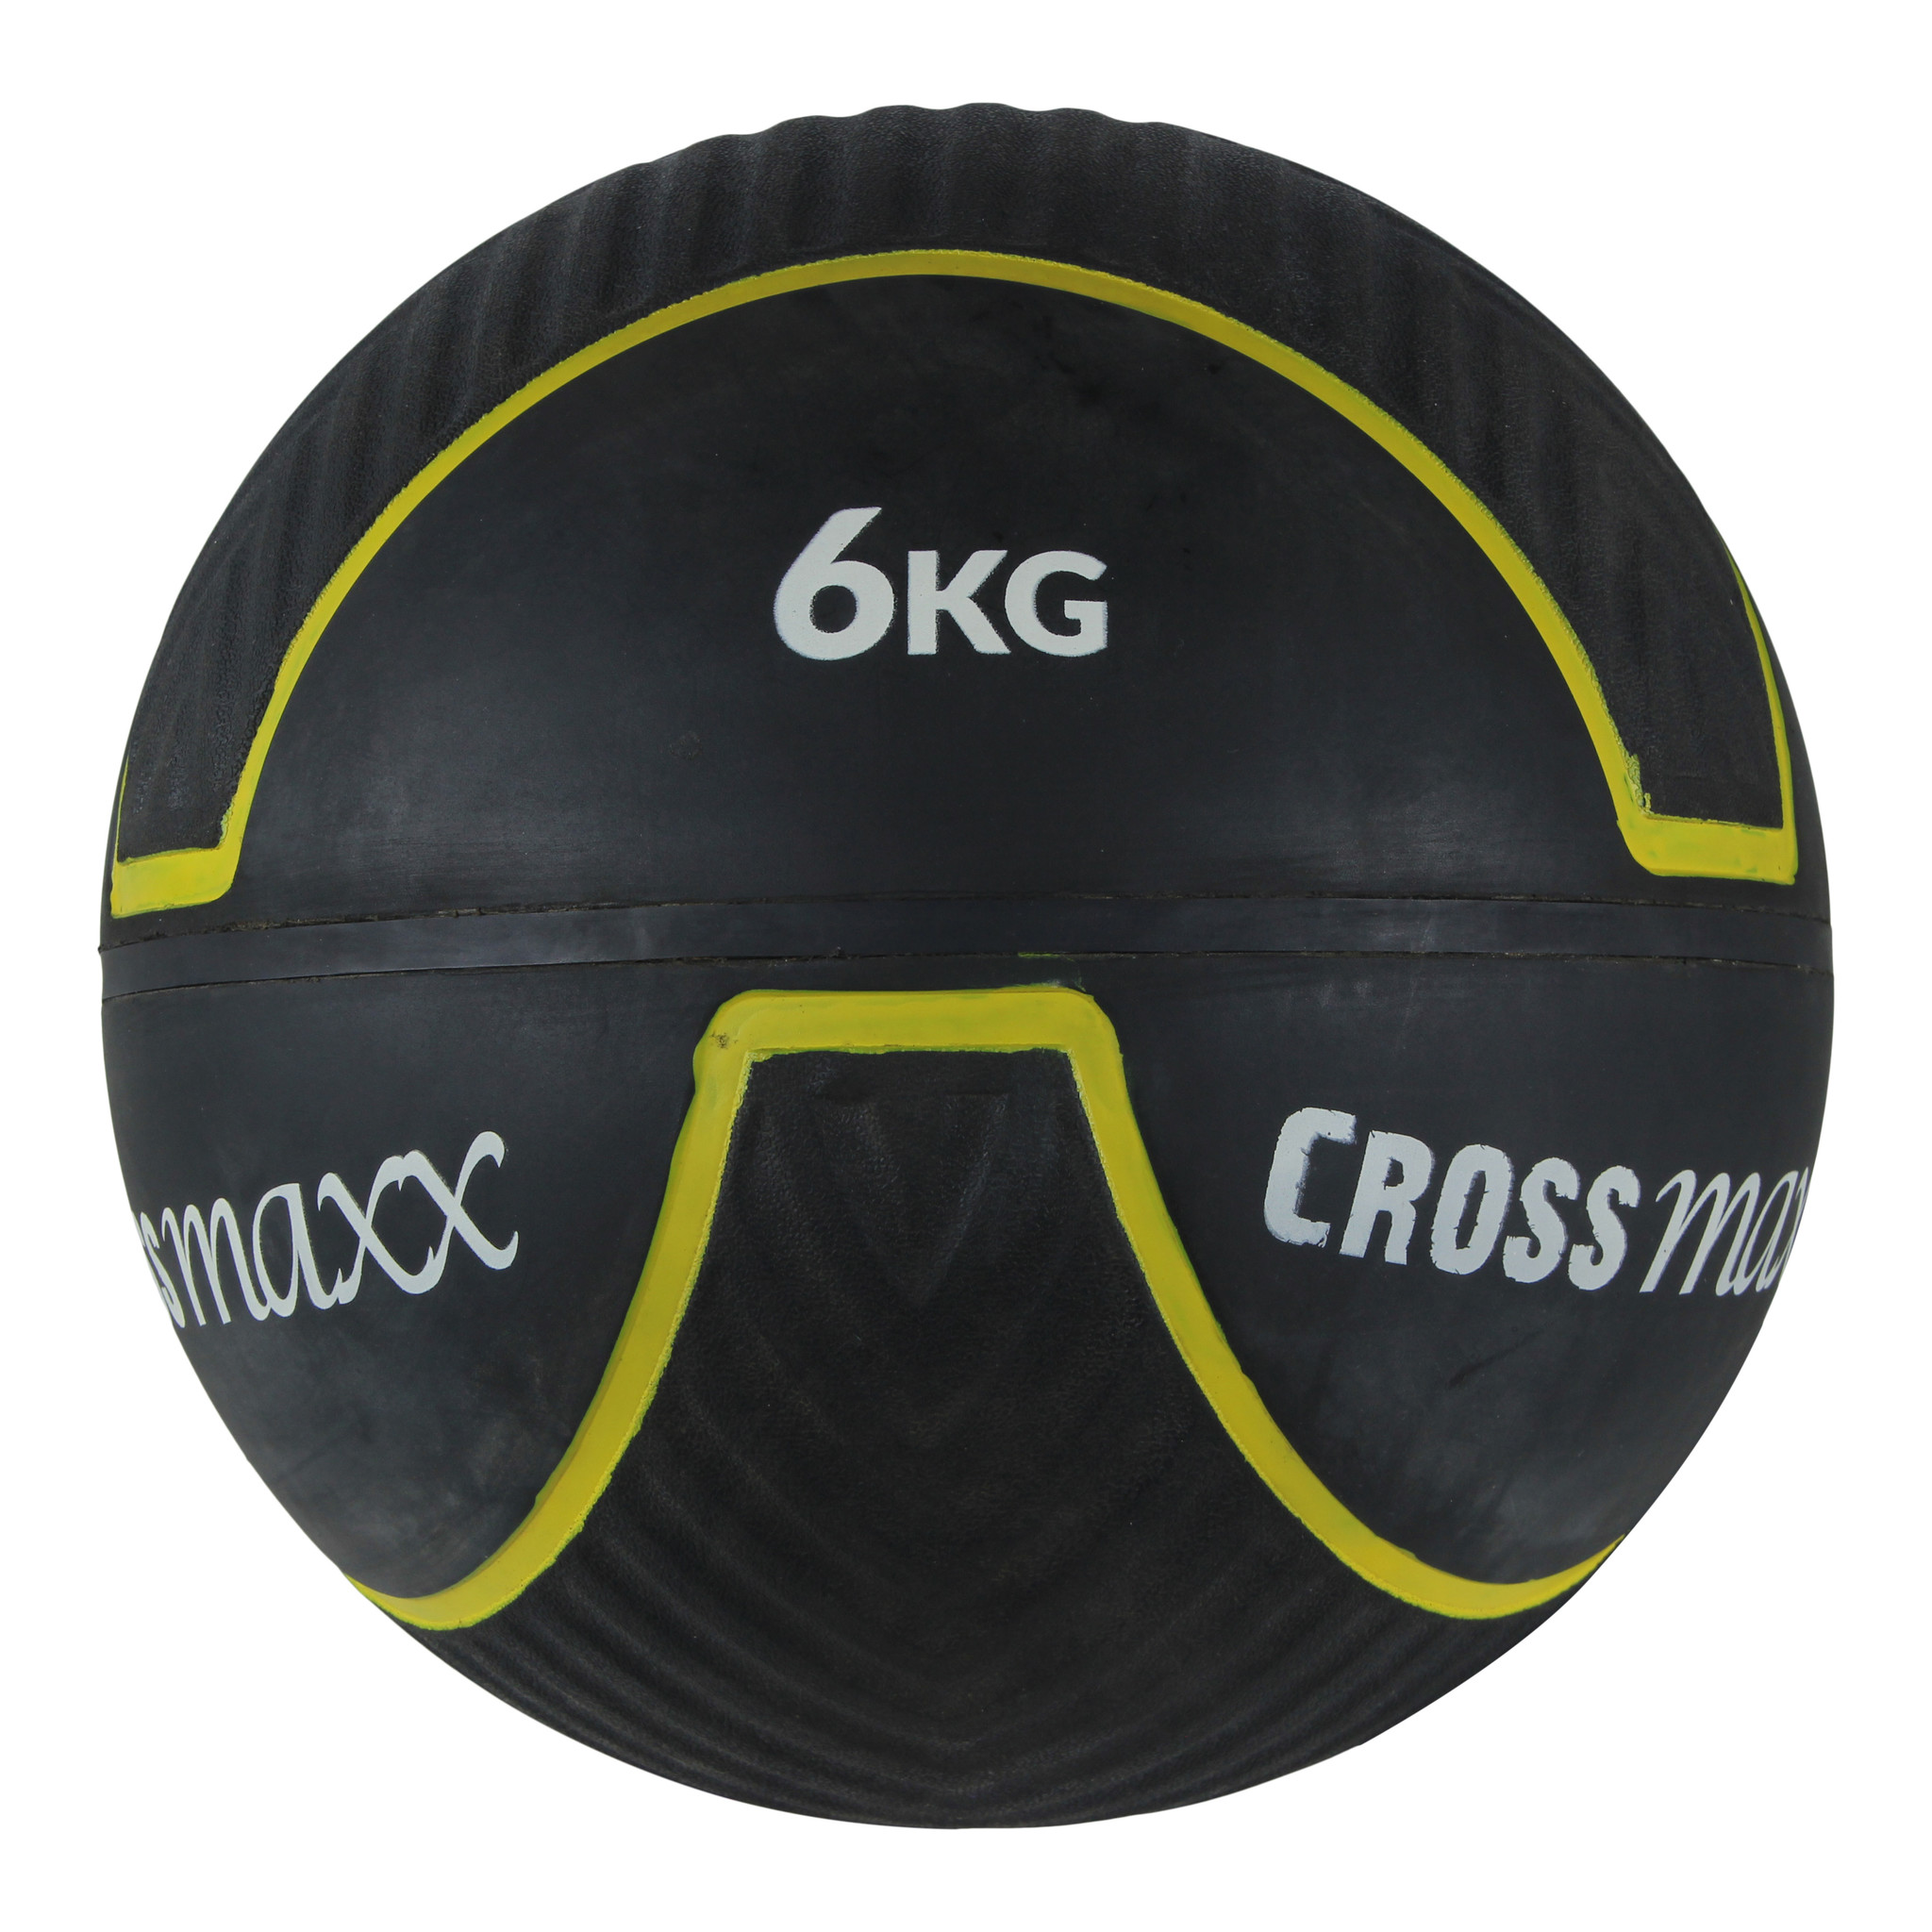 Crossmaxx RBBR Wall Ball 6 kg thumbnail